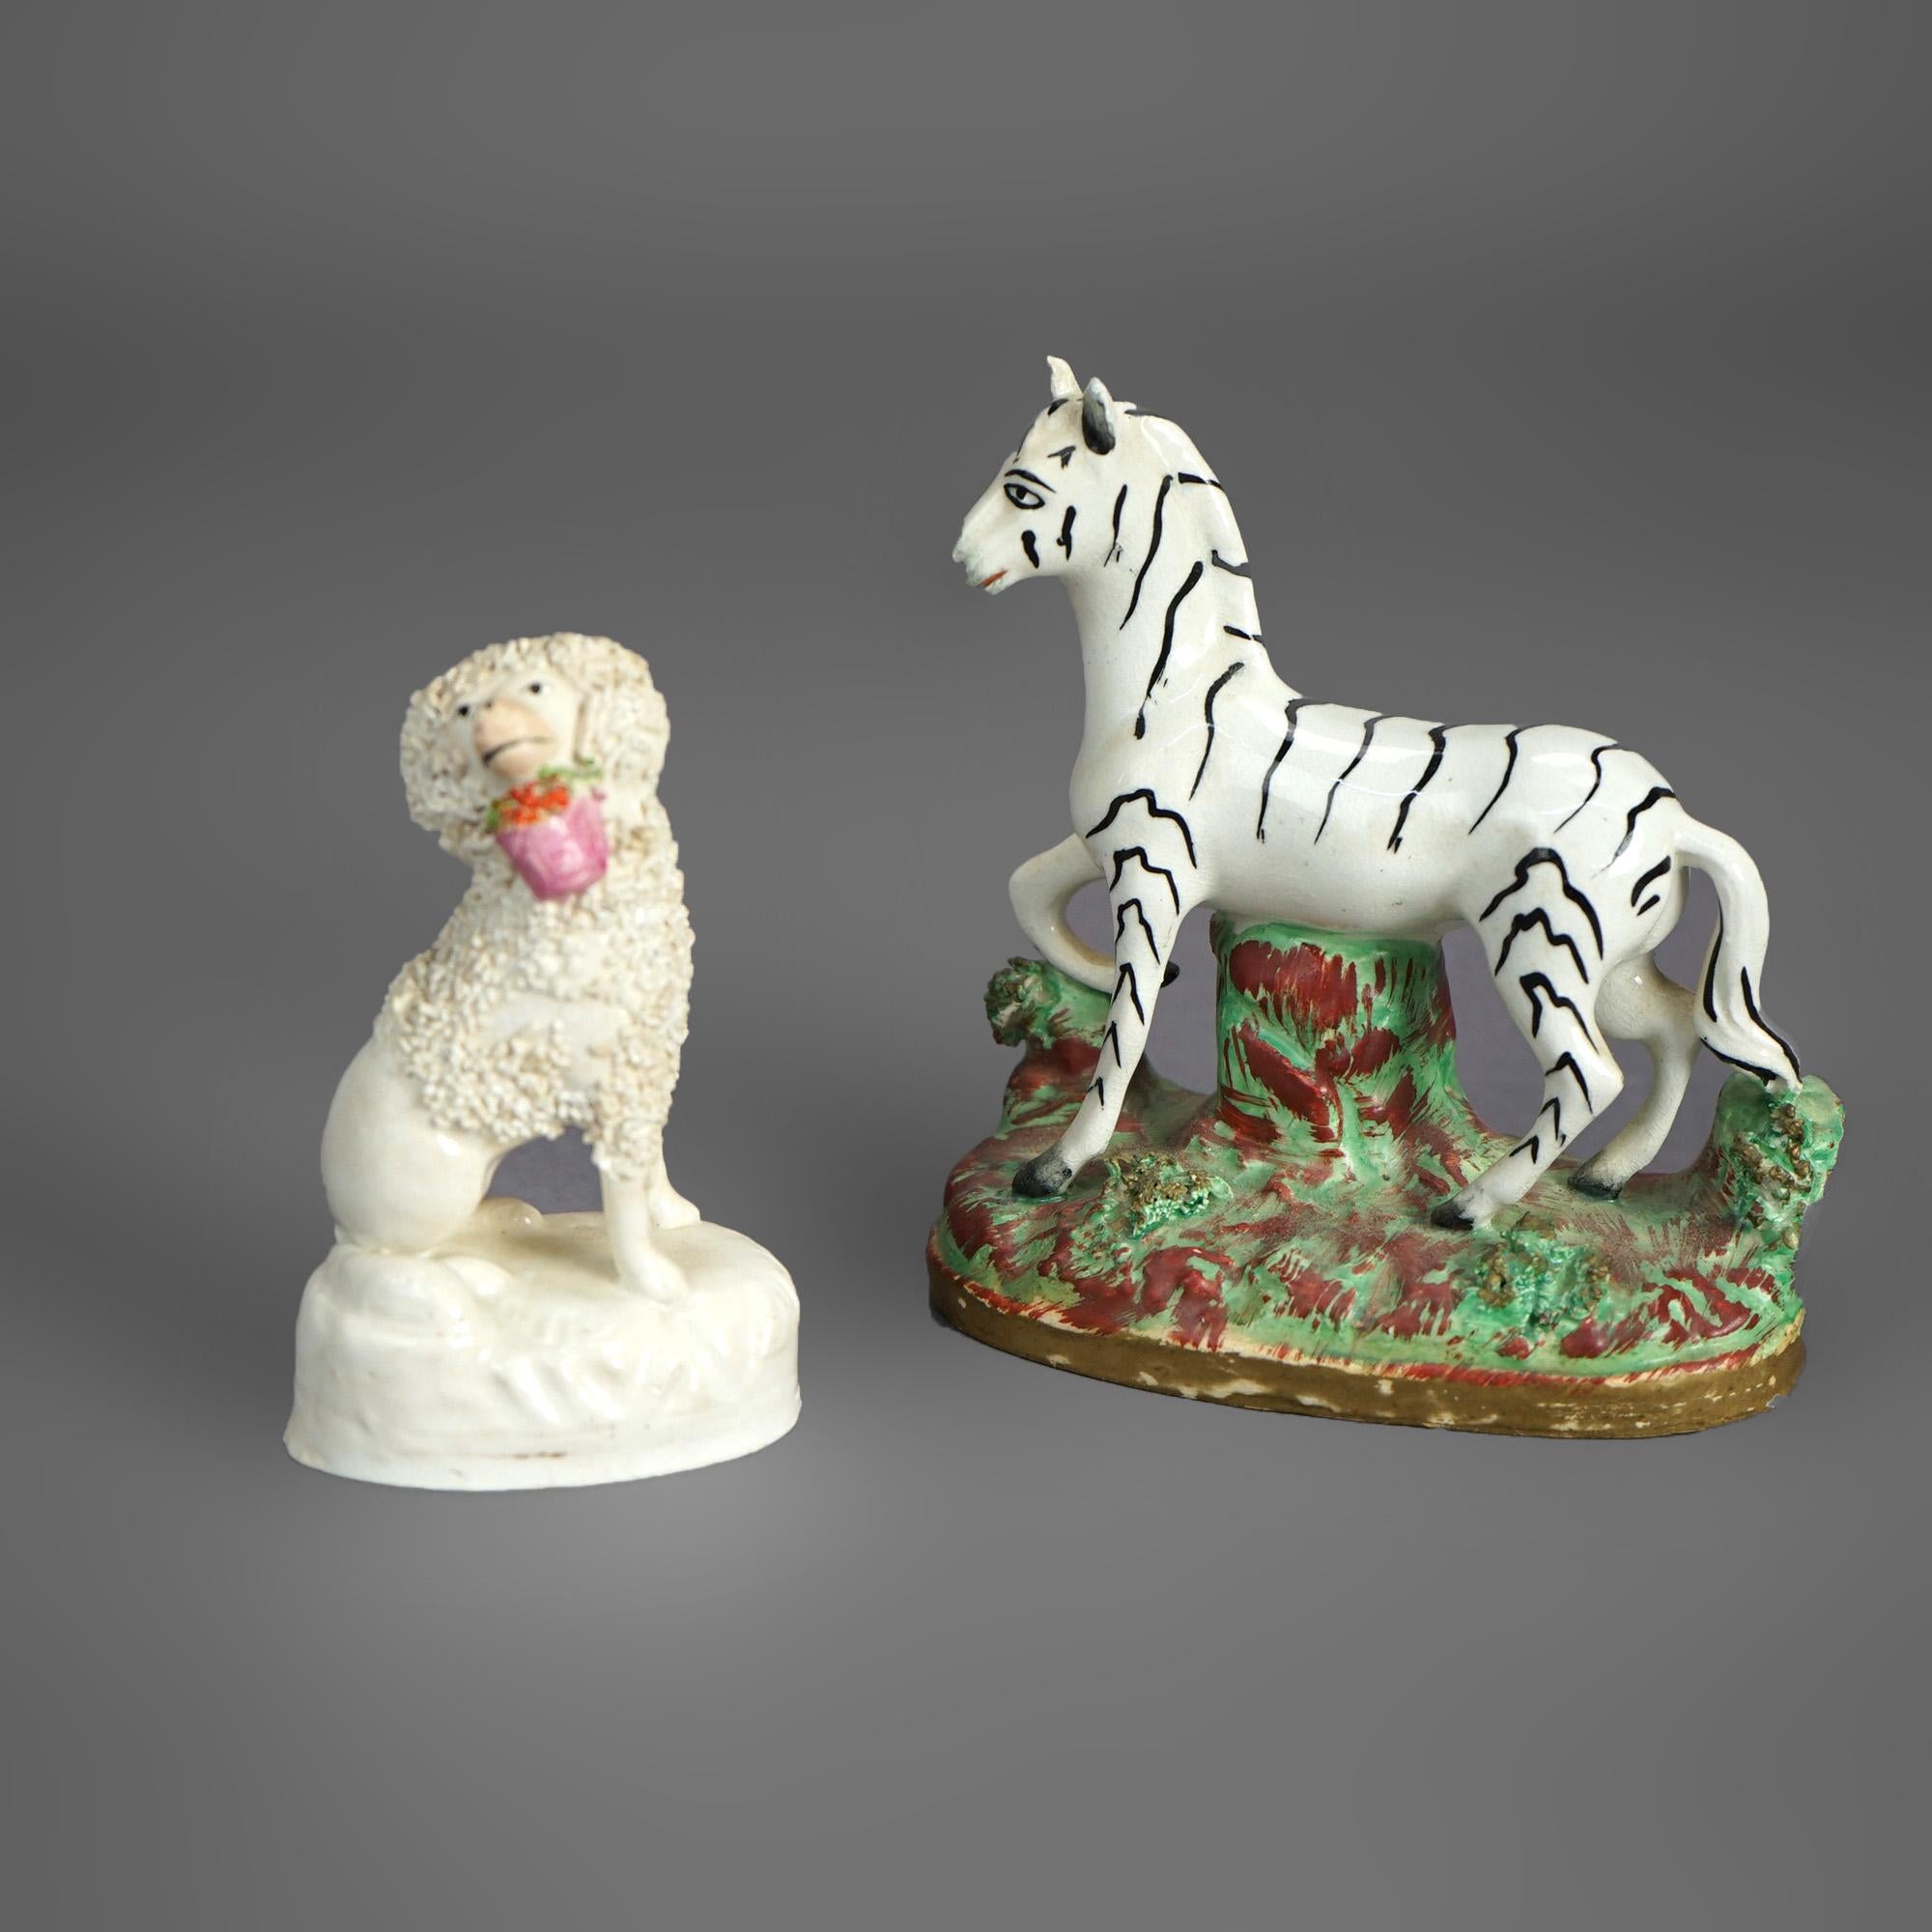 Anciennes figurines de chiens zébrés et canards du Staffordshire polychromées C1870

Mesures - Zèbre : 5''H x 4.75''L x 2.5''D ; Chien : 4''H x 2.5''L x 2''D